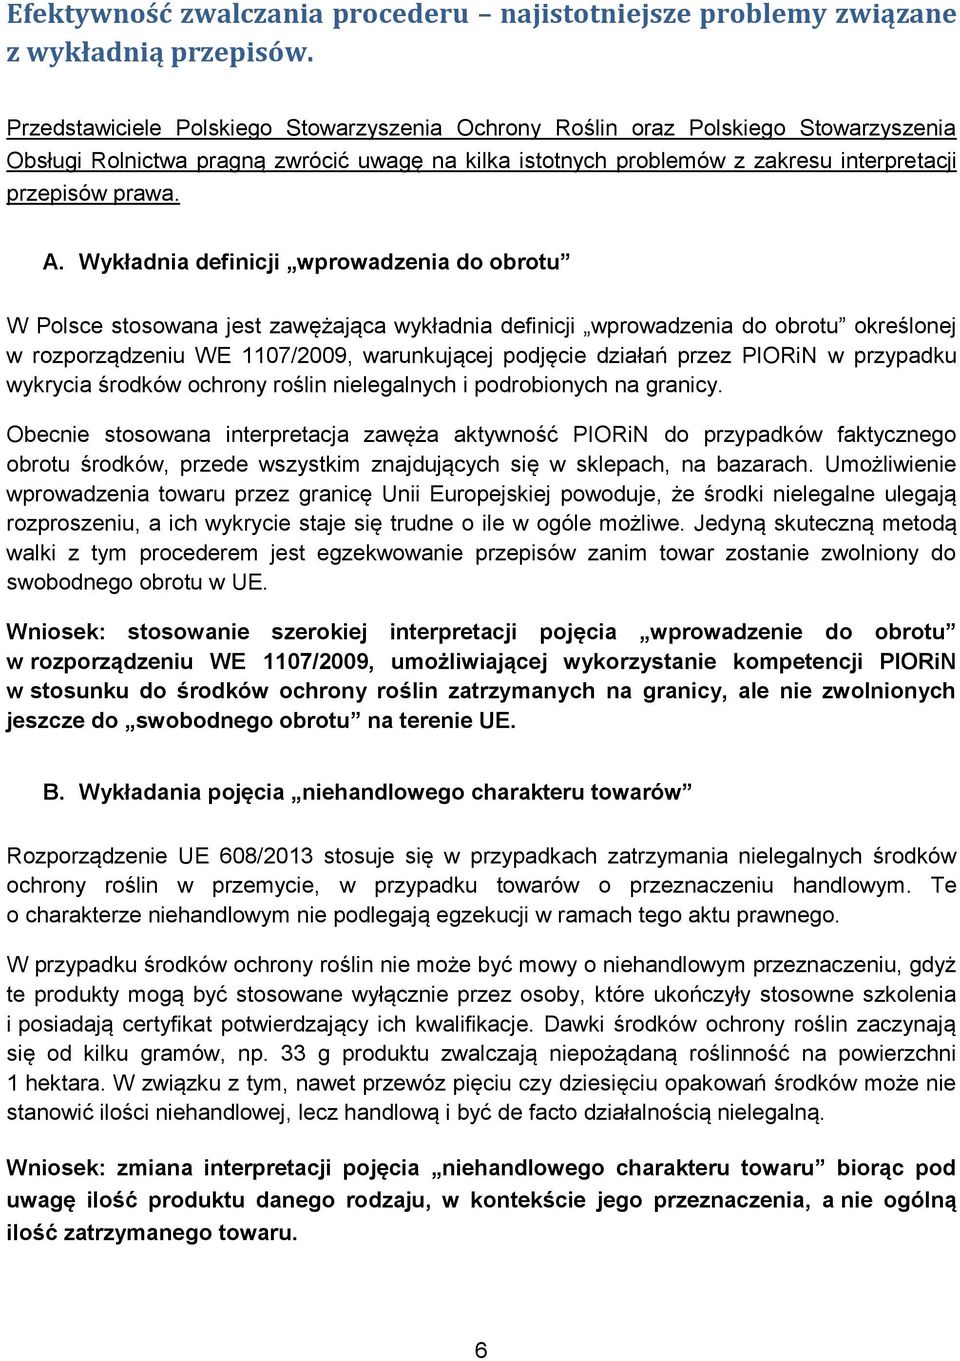 Wykładnia definicji wprowadzenia do obrotu W Polsce stosowana jest zawężająca wykładnia definicji wprowadzenia do obrotu określonej w rozporządzeniu WE 1107/2009, warunkującej podjęcie działań przez